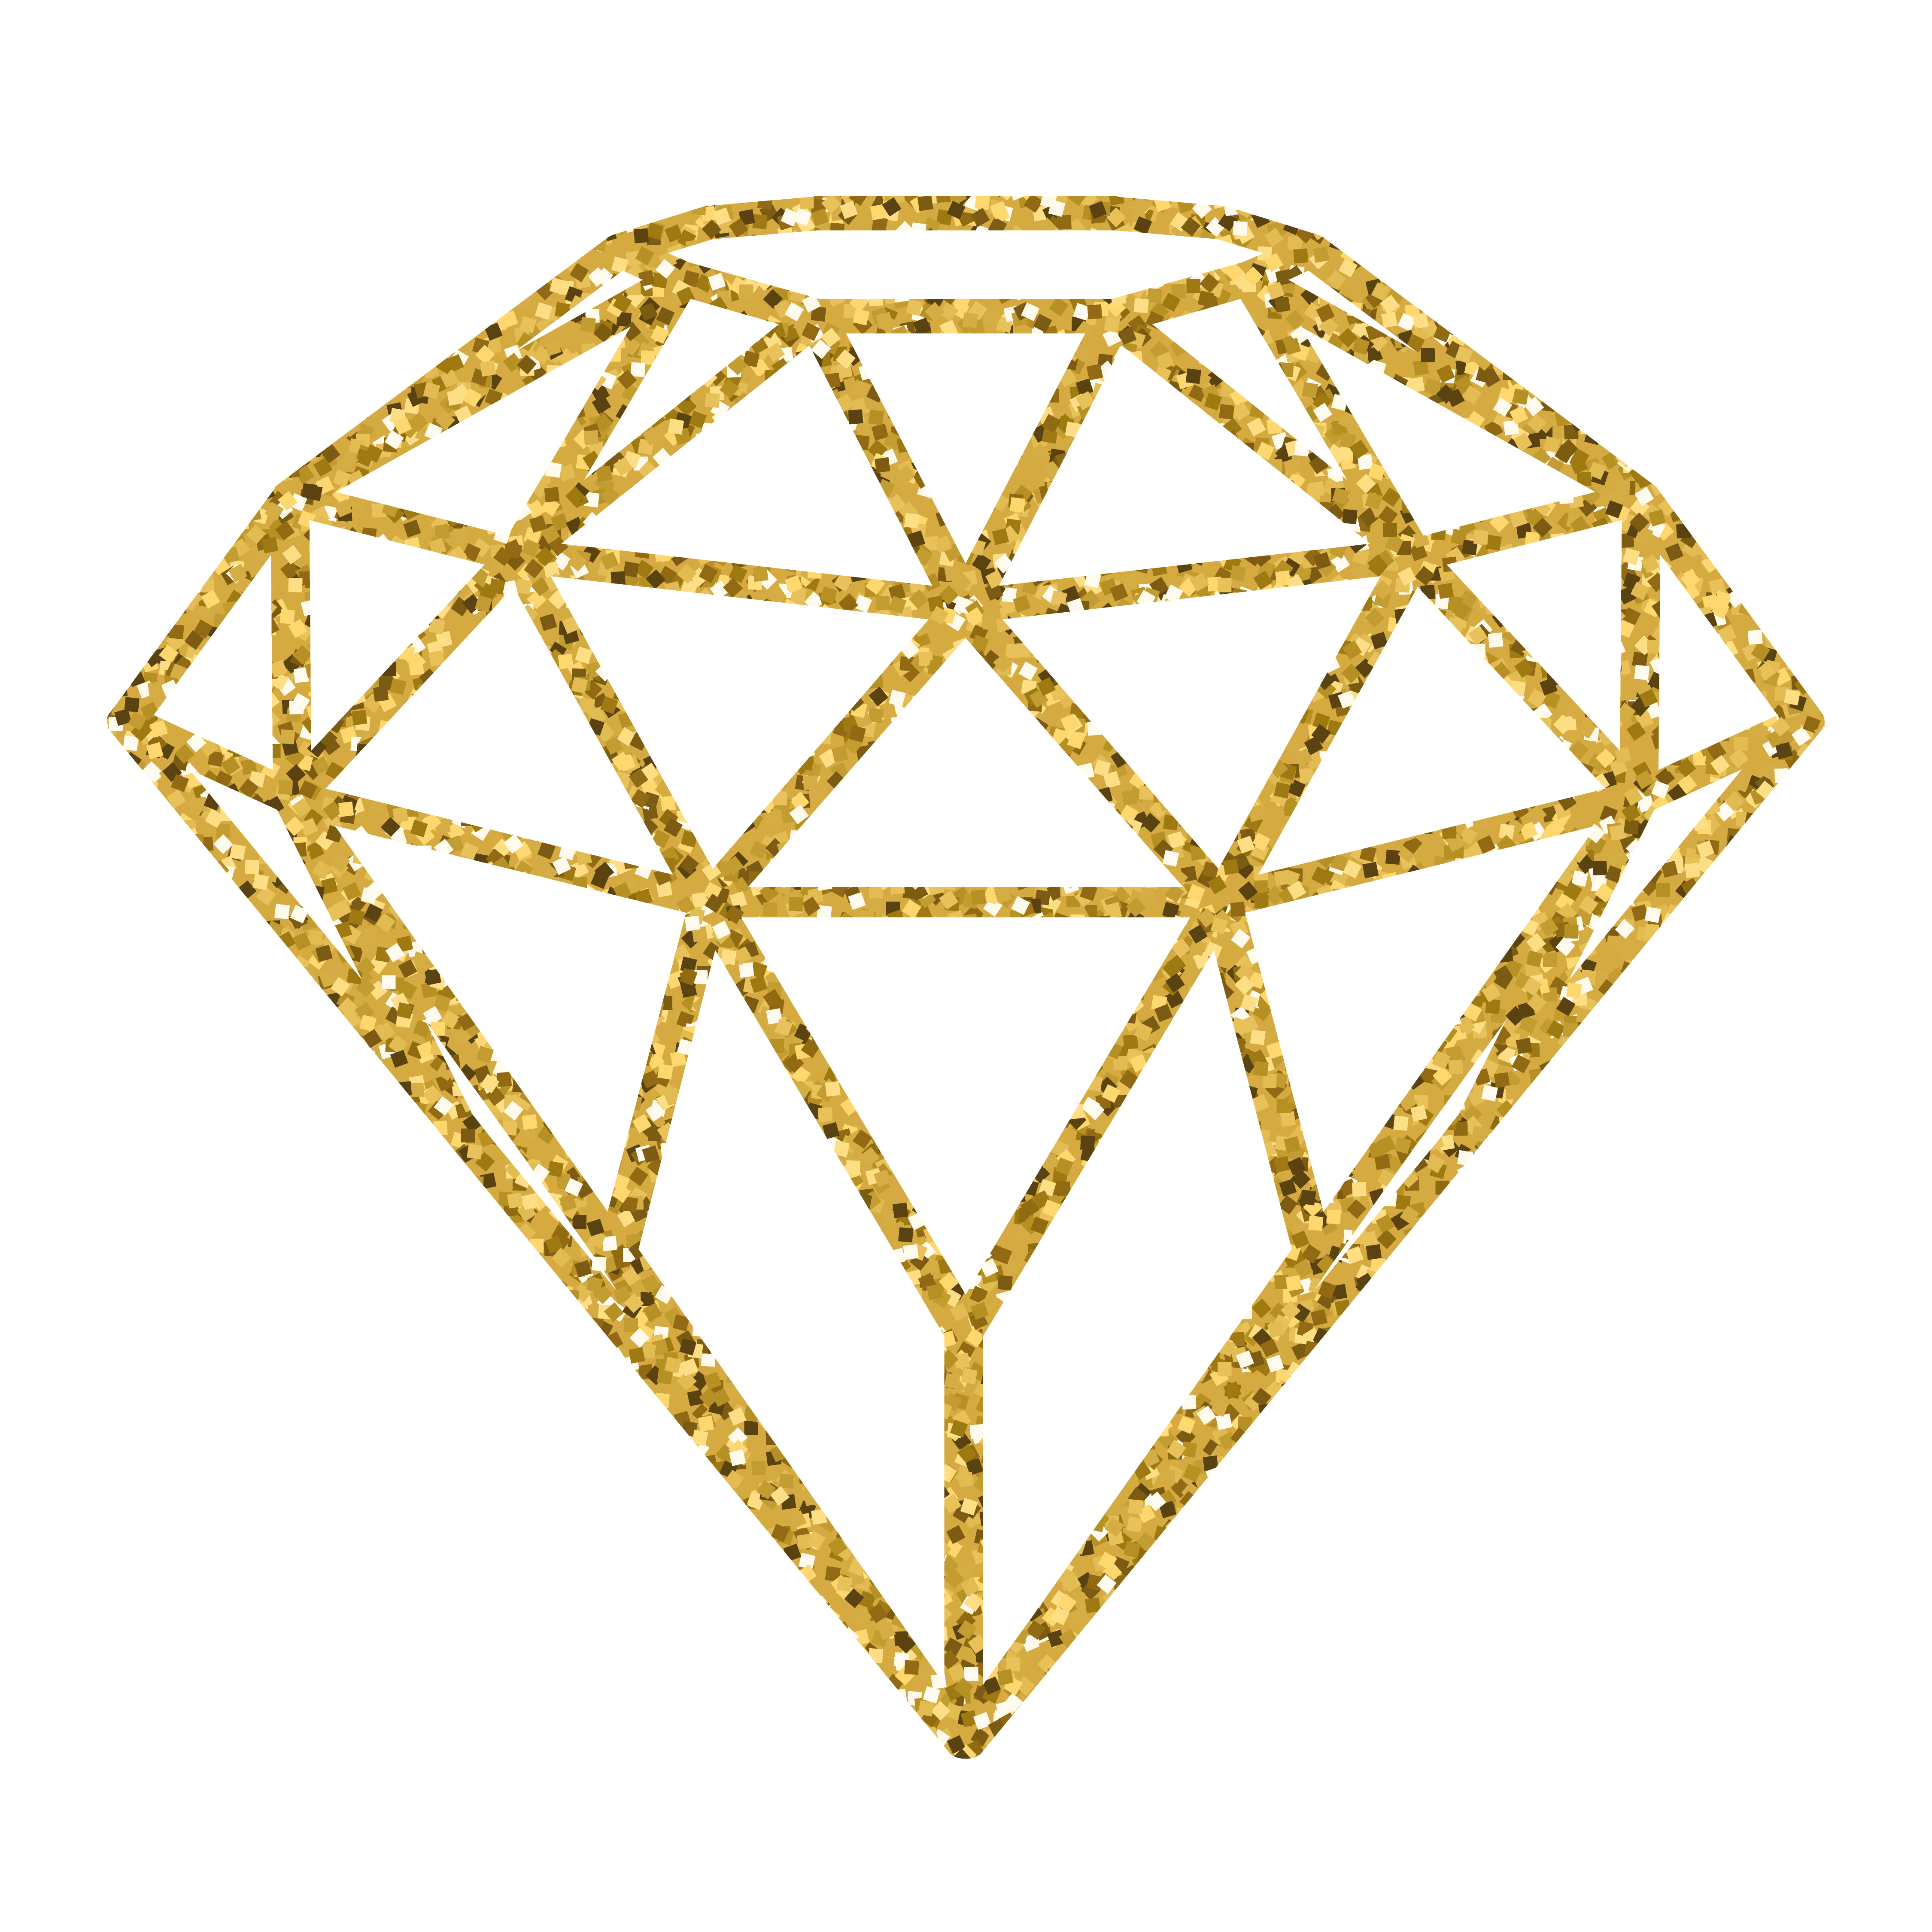 Geometrical golden glitter diamond isolated on white